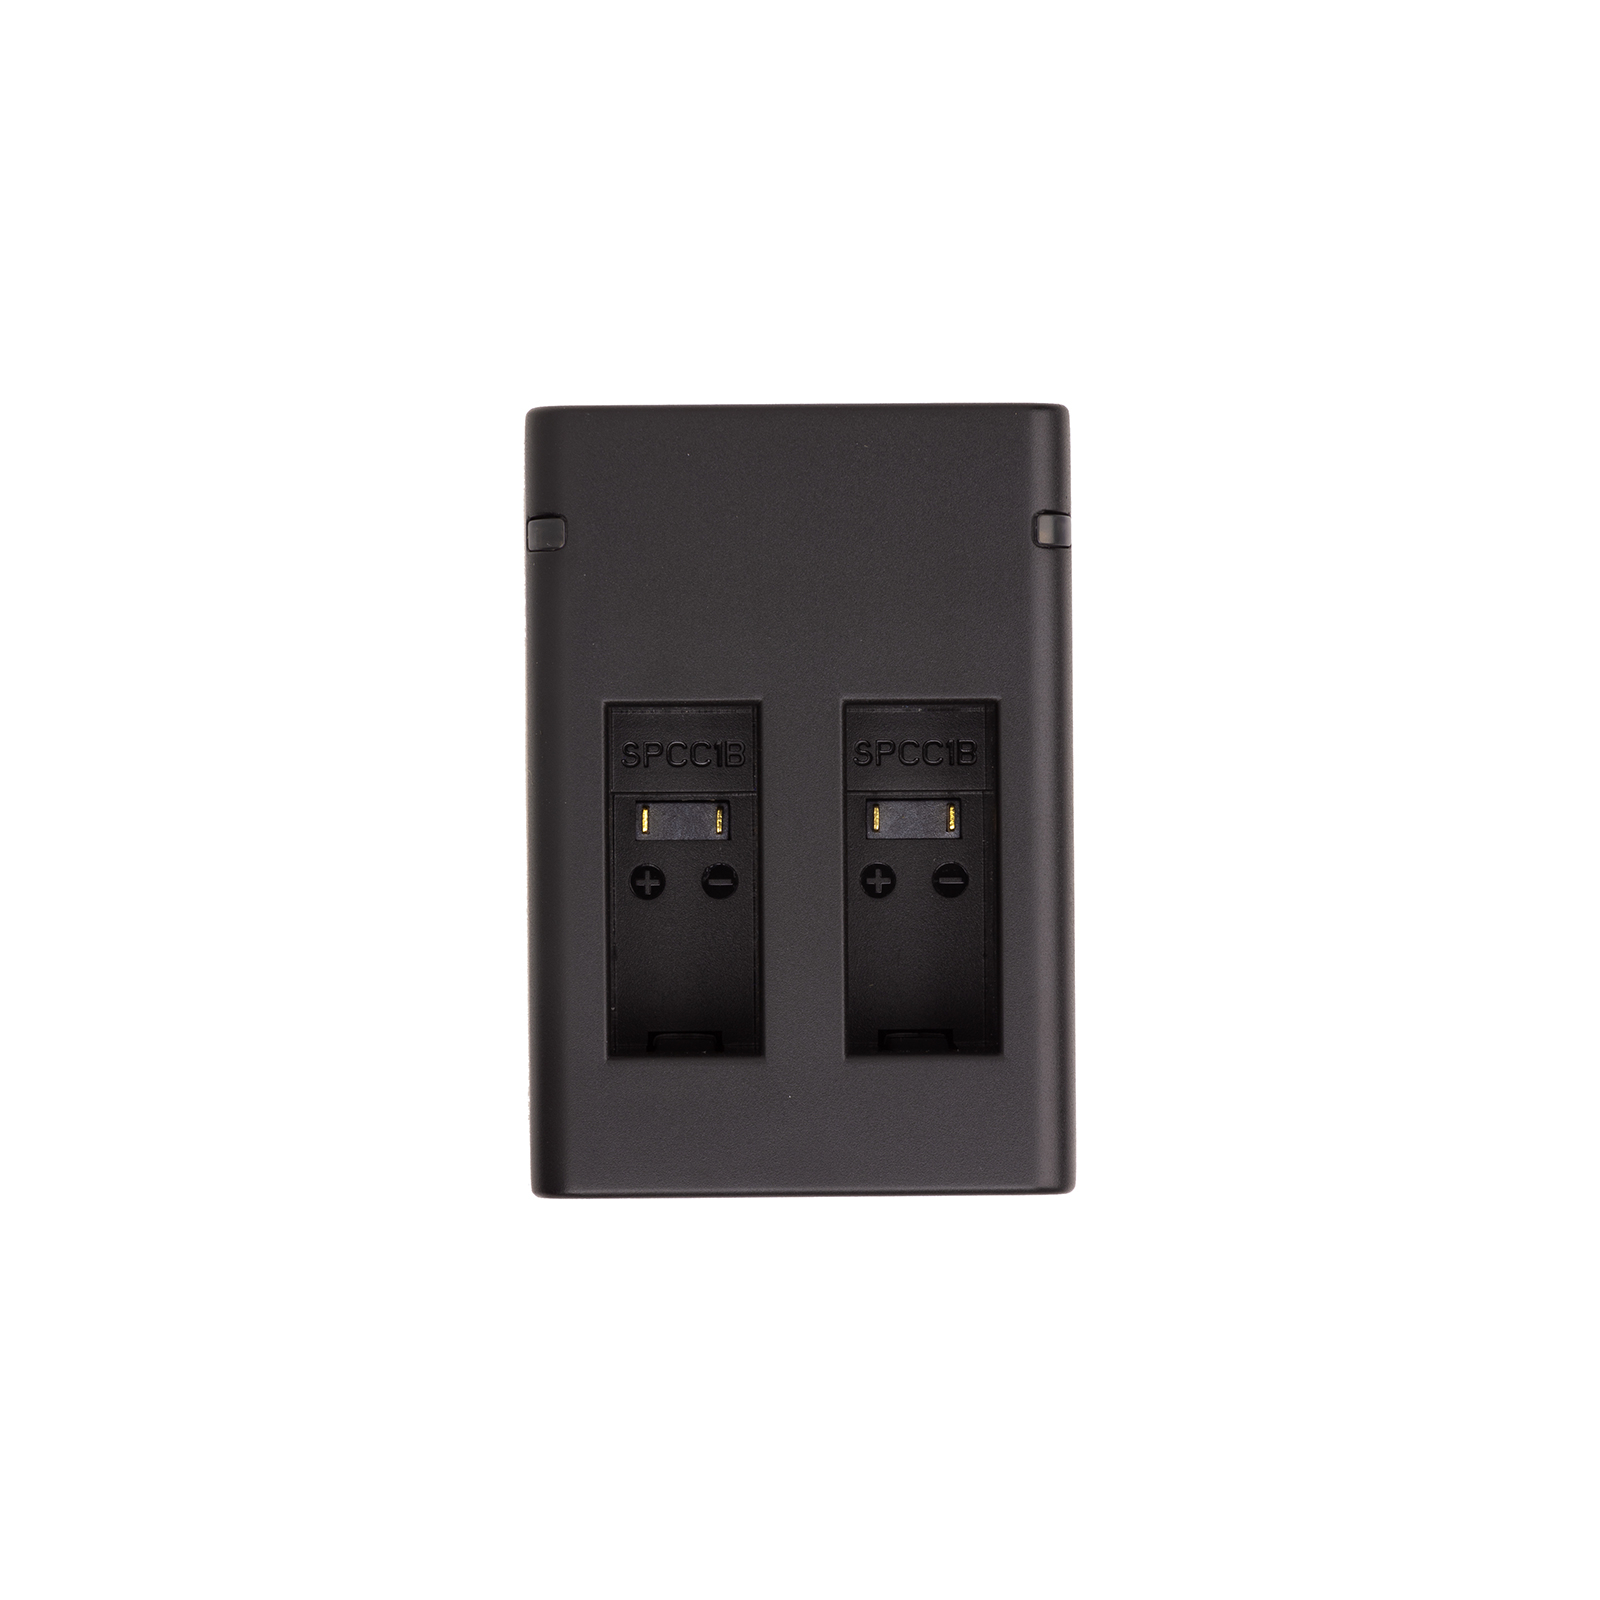 Зарядний пристрій для фото PowerPlant GoPro SPCC1B 2 slots (CH980260)